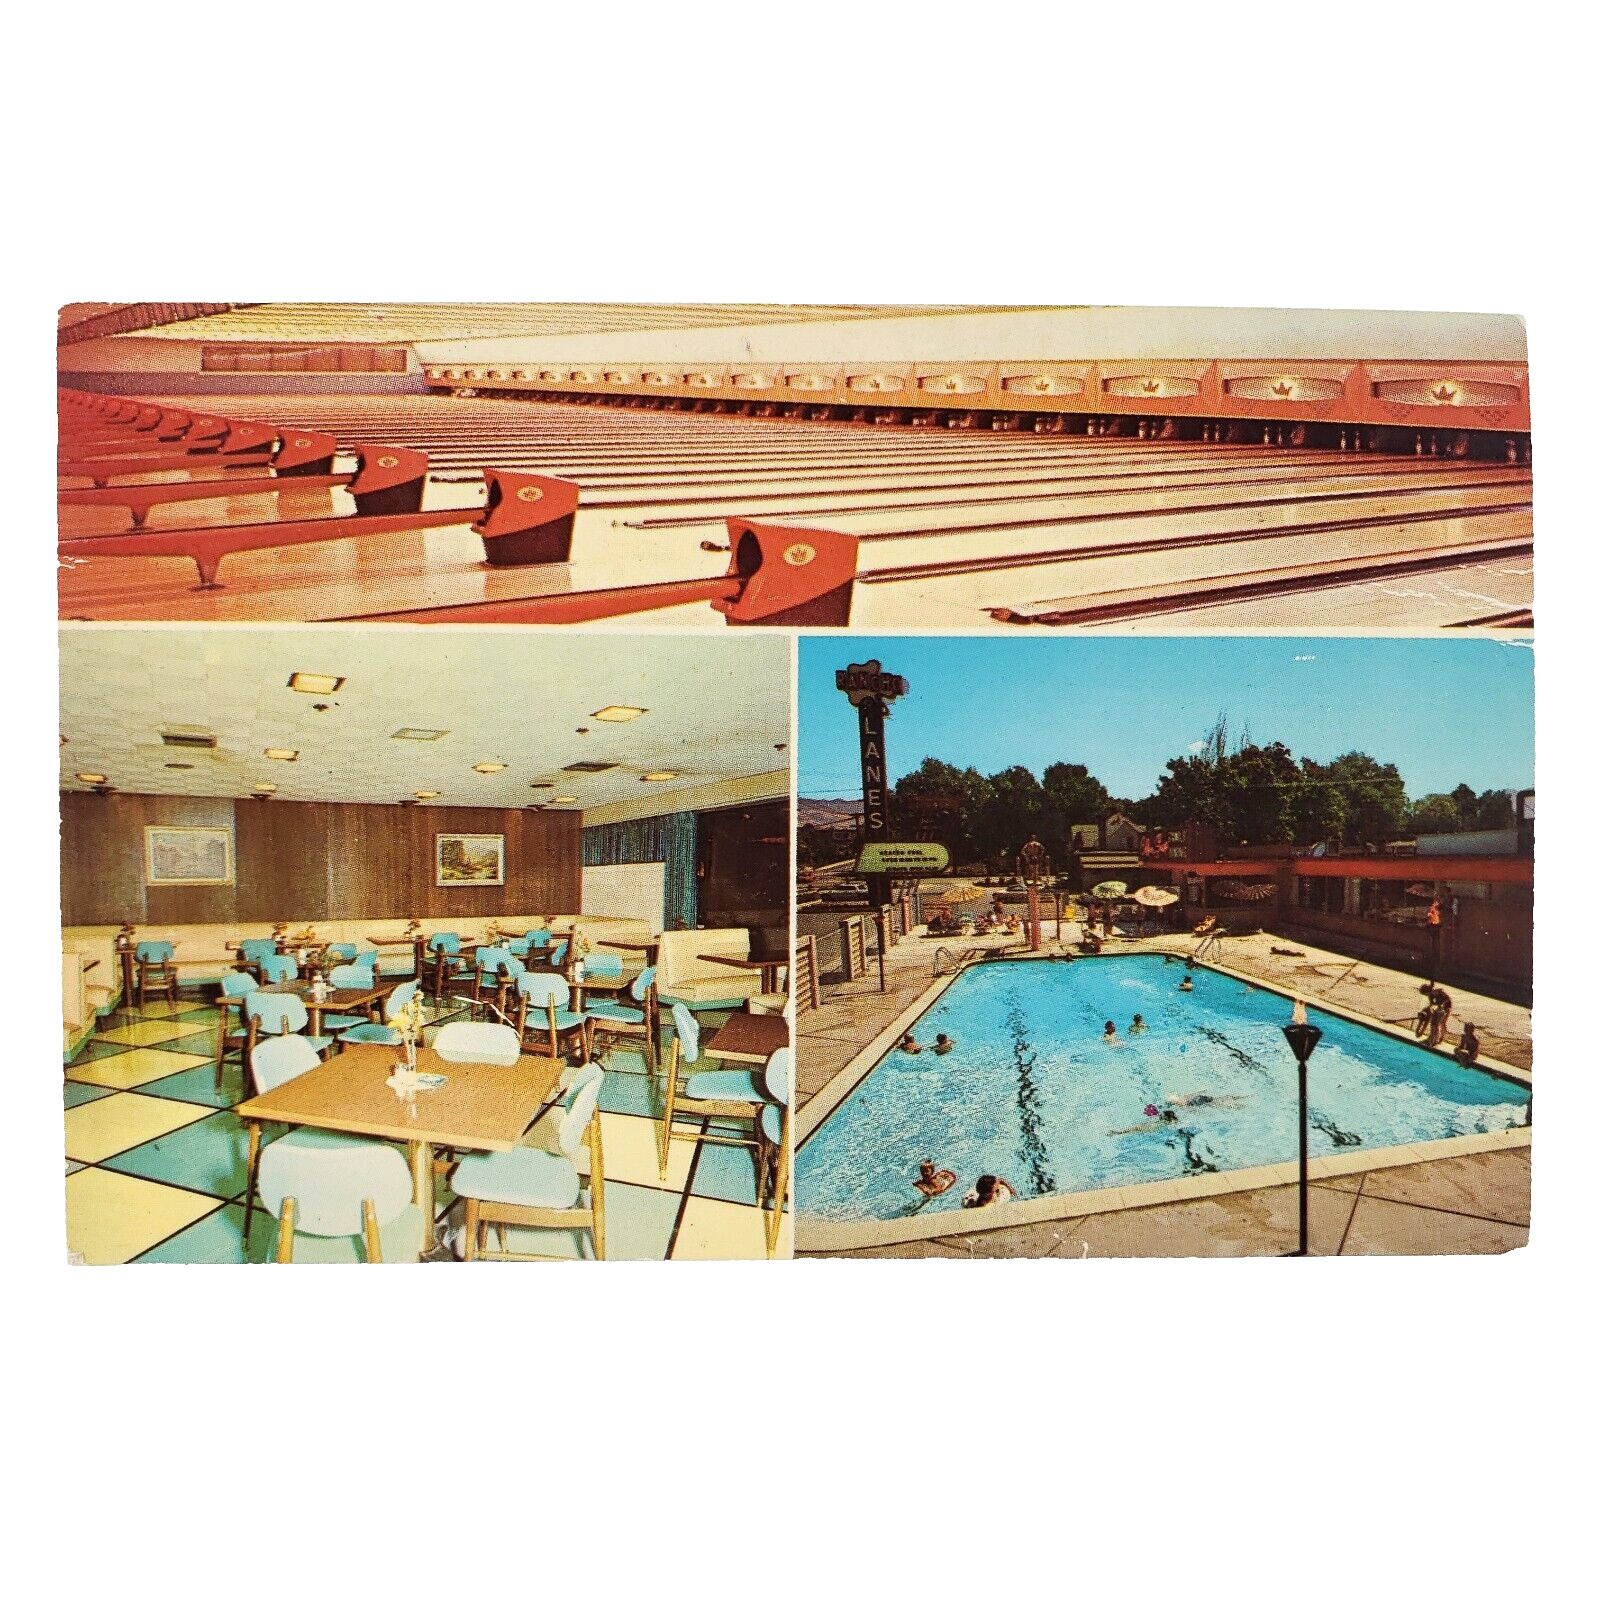 Rancho Bowling & Swimming Pool Postcard 1950s Salt Lake City Utah Diner C3656